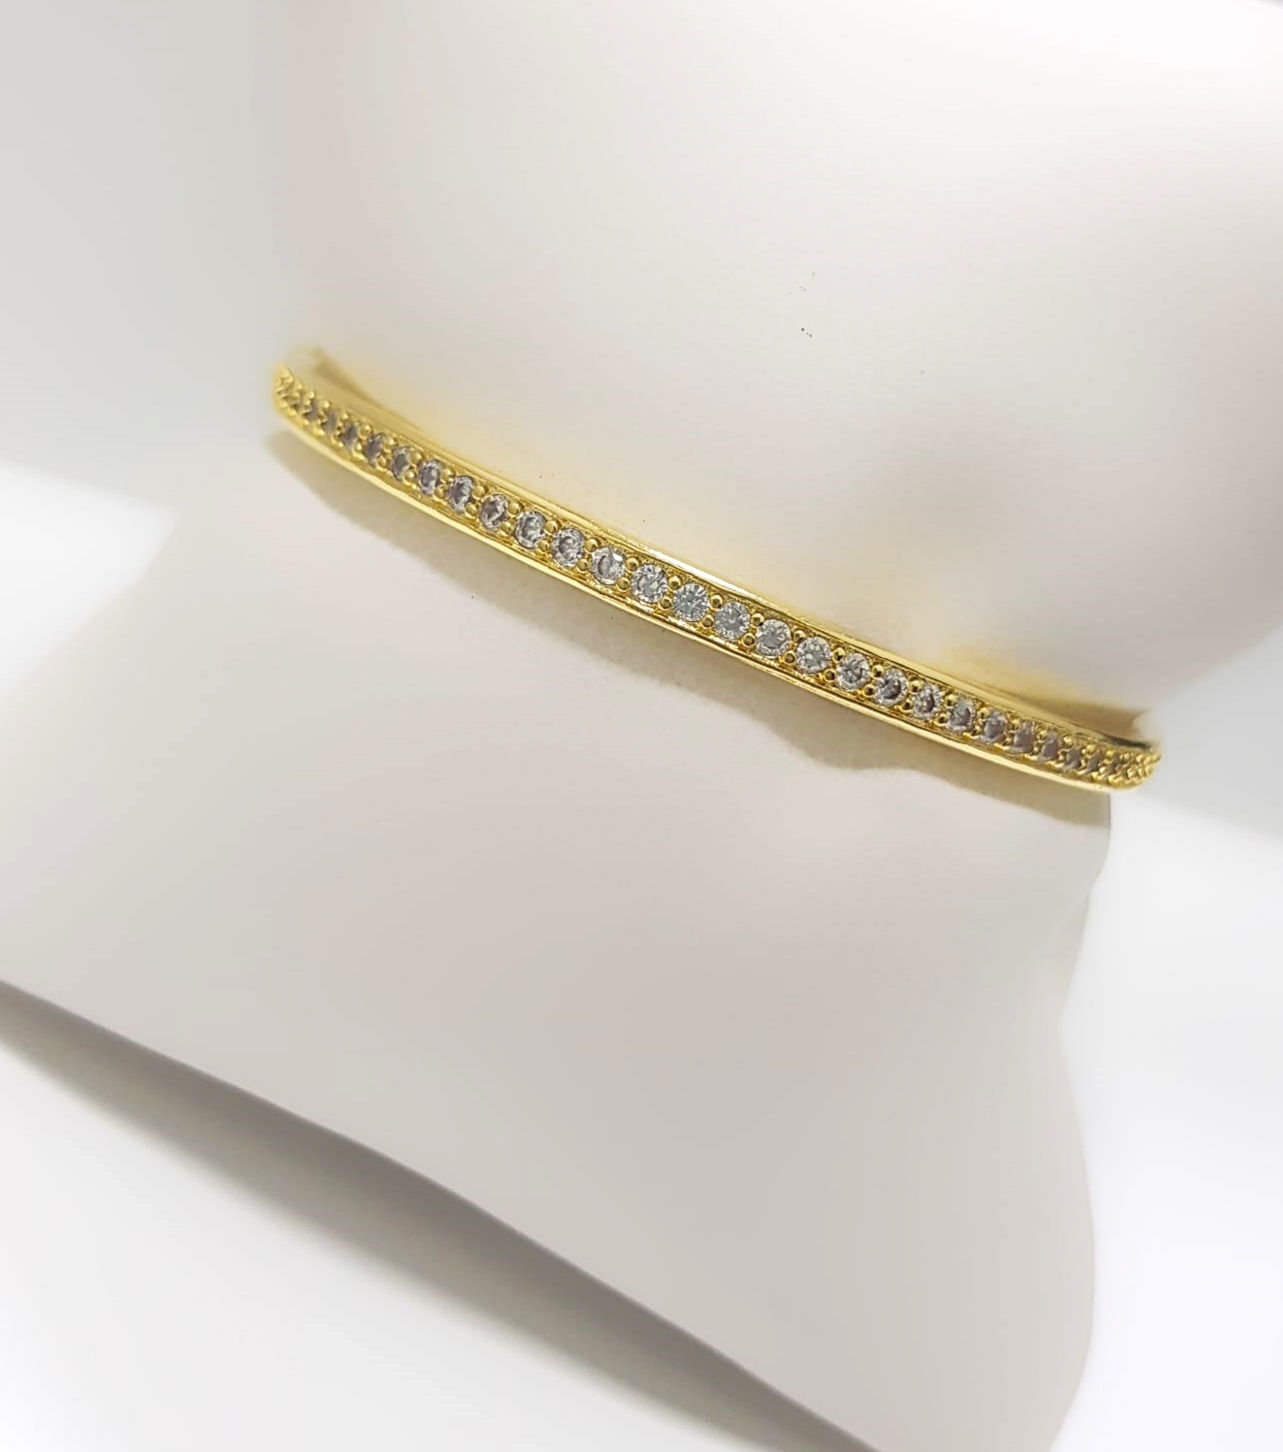 Bracelete 6.0 cm 1 Fileira Micro Zircônia Cristal Banhado em Ouro18k (SKU: 00090592)  - Lazzuli Joias